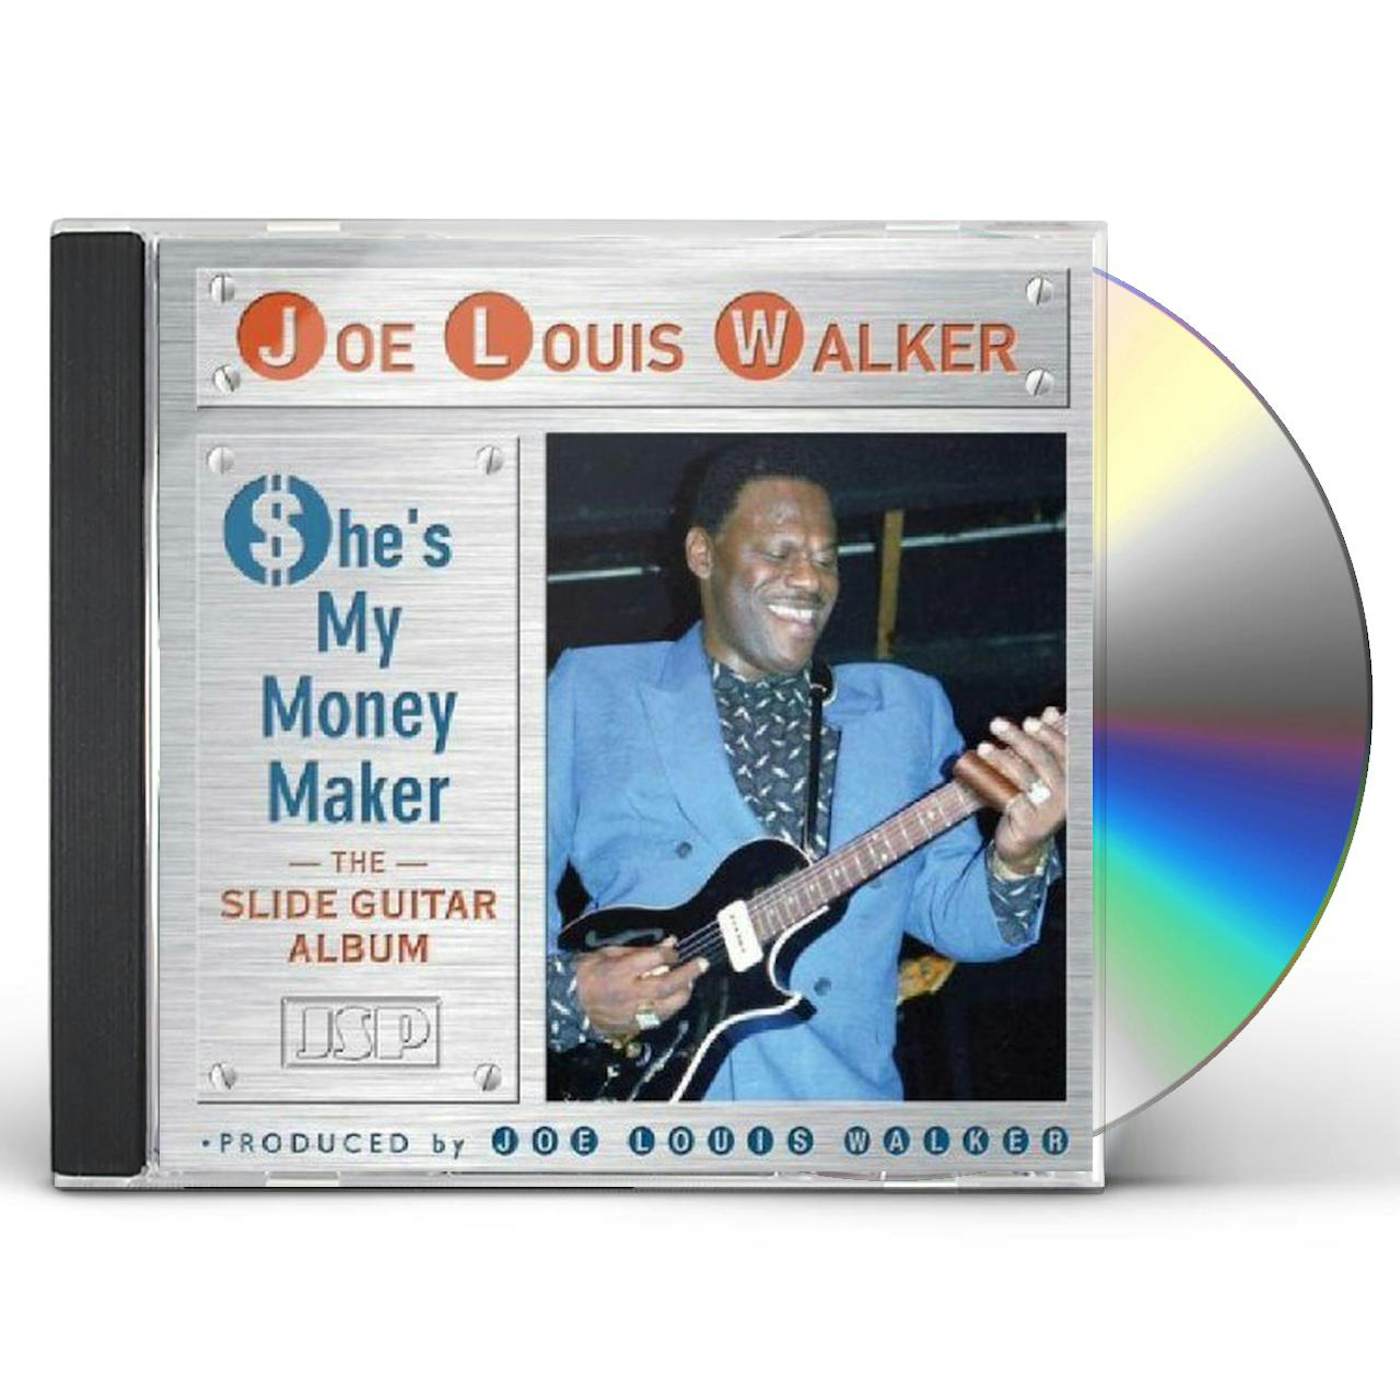 Joe Louis Walker SHE'S MY MONEY MAKER CD